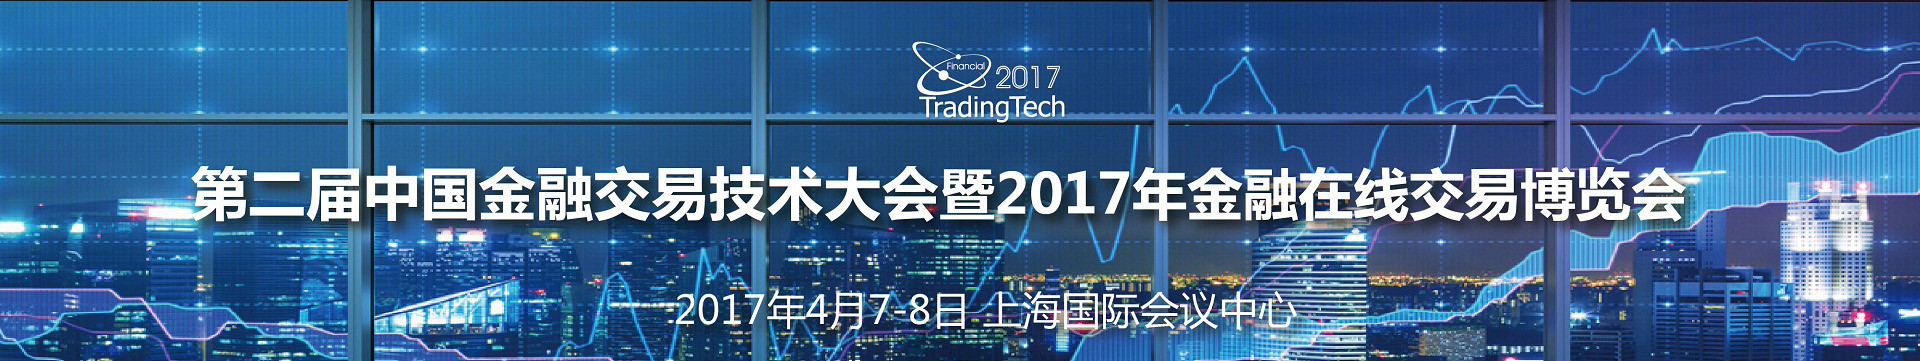  第二届中国金融交易技术大会暨2017年金融在线交易博览会